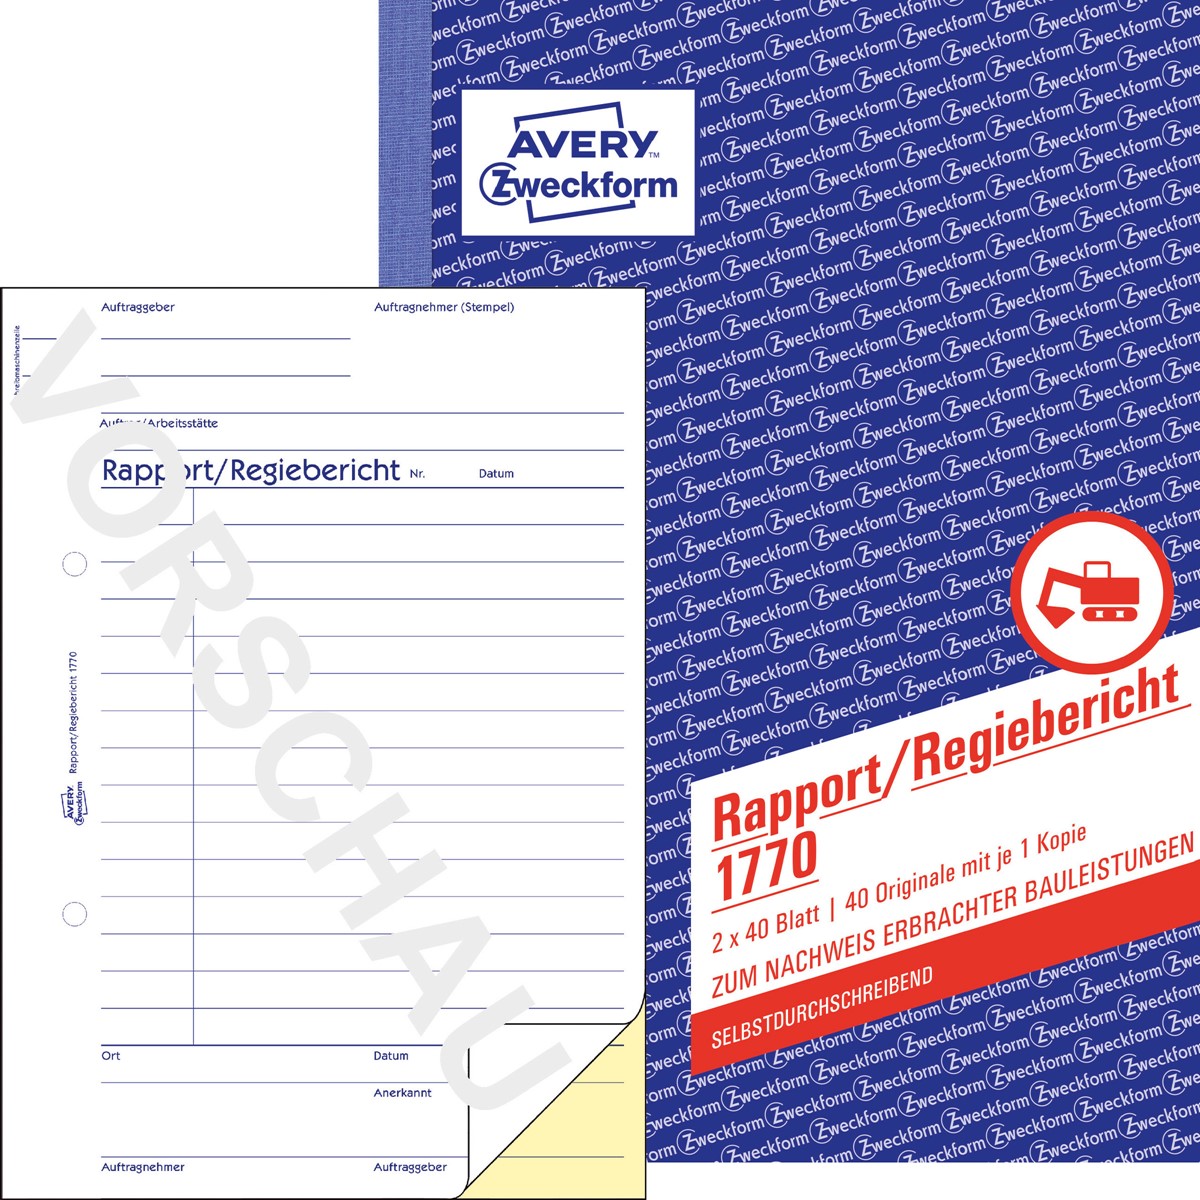 A4, selbstdurchschreibend, 2x40 Blatt 2 Stück Avery Zweckform 1769 Rapport/Regiebericht 2 Stück, Rapport/Regiebericht | selbstdurchschreibend 